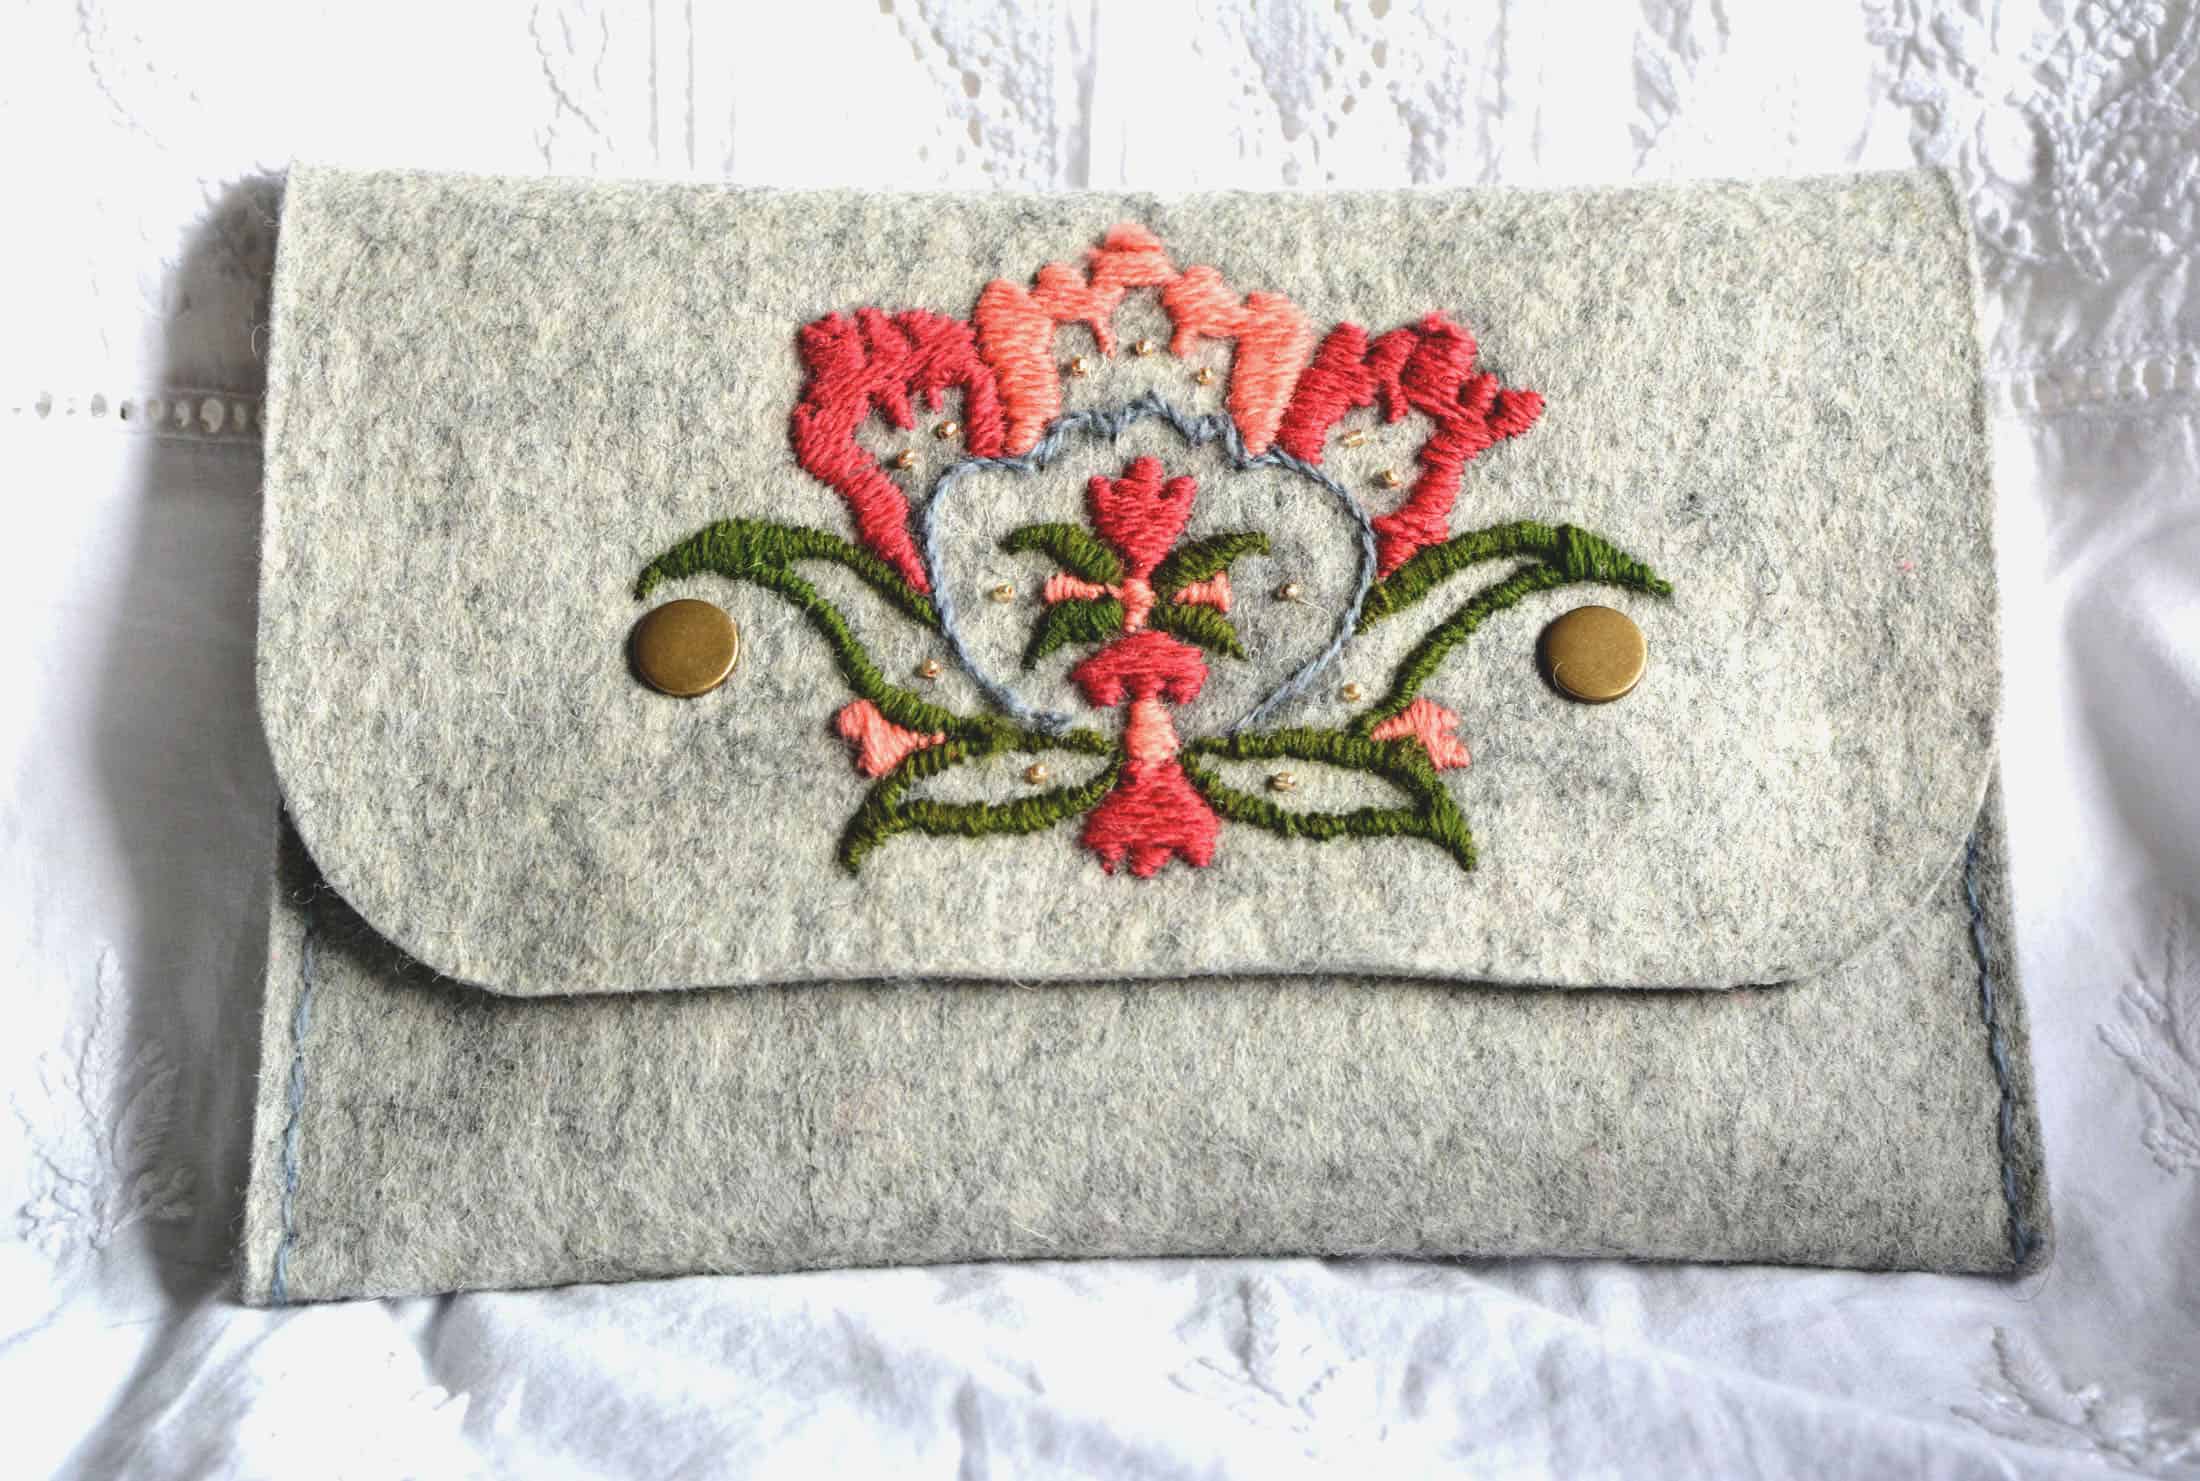 Buy Crochet Handmade Wool Bag Handbag Crochet Bag Wool Handmade Shopper  Crochet Bag With Faux Leather Handles Online in India - Etsy